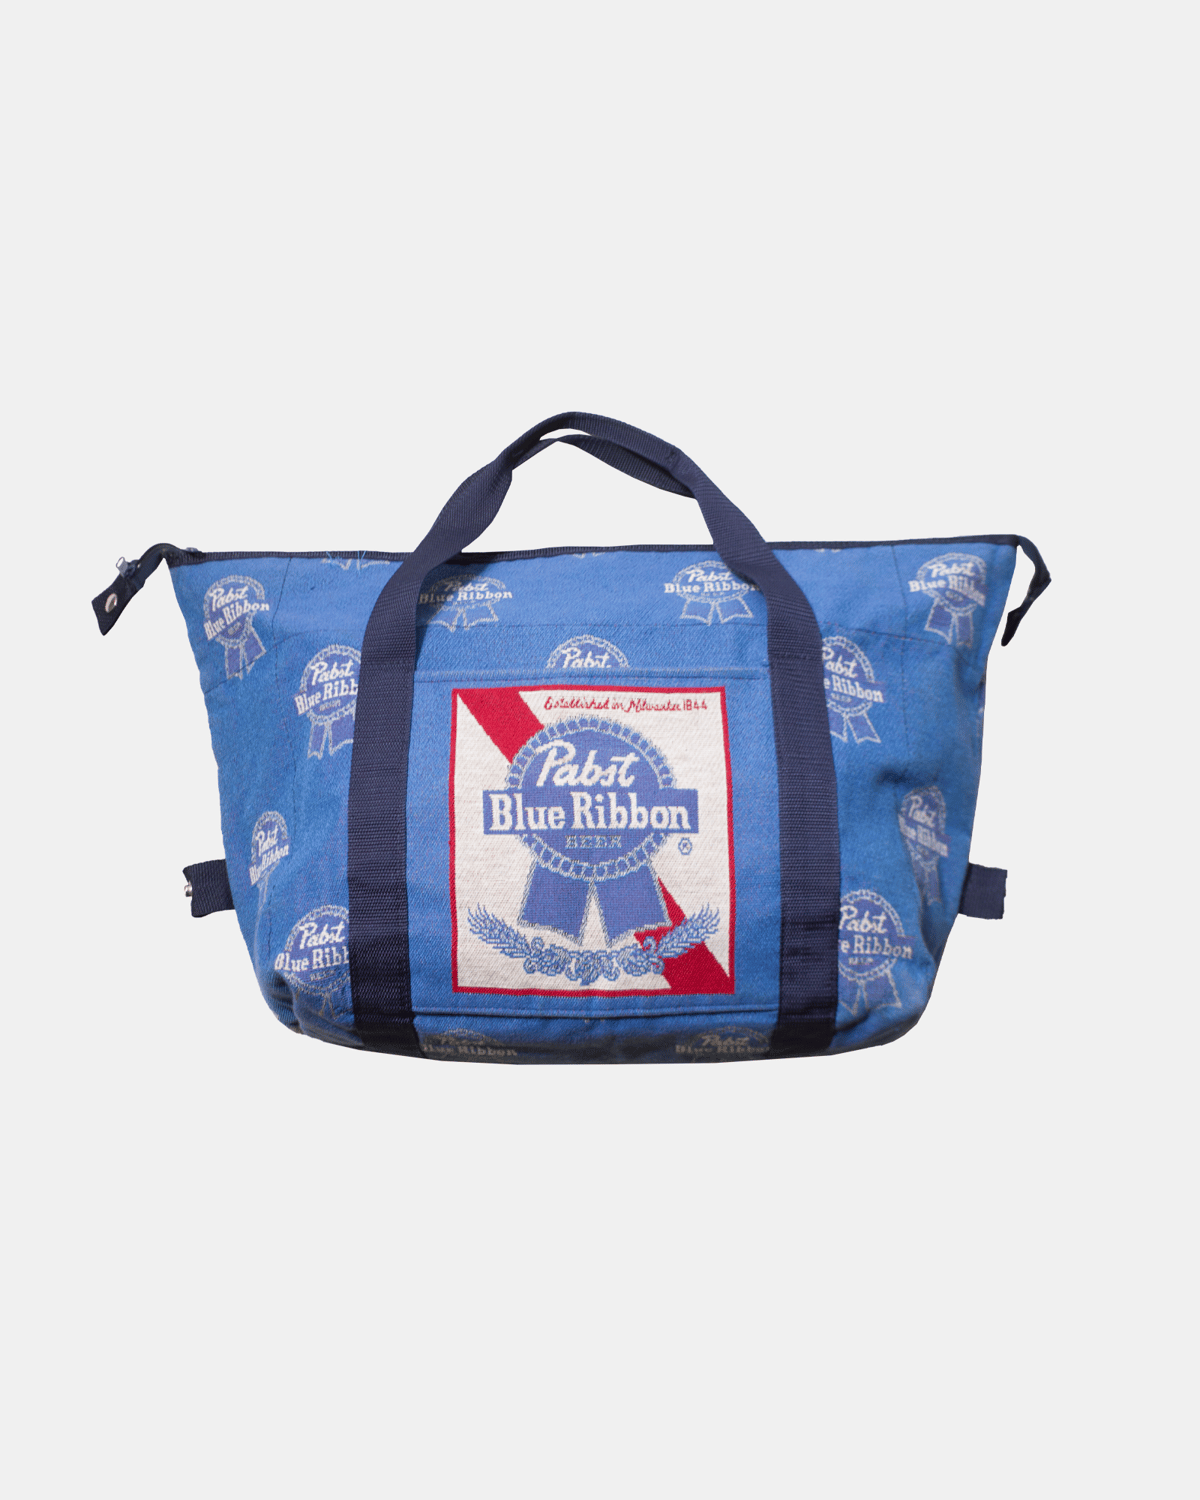 Vintage Pabst Blue Ribbon Travel Bag